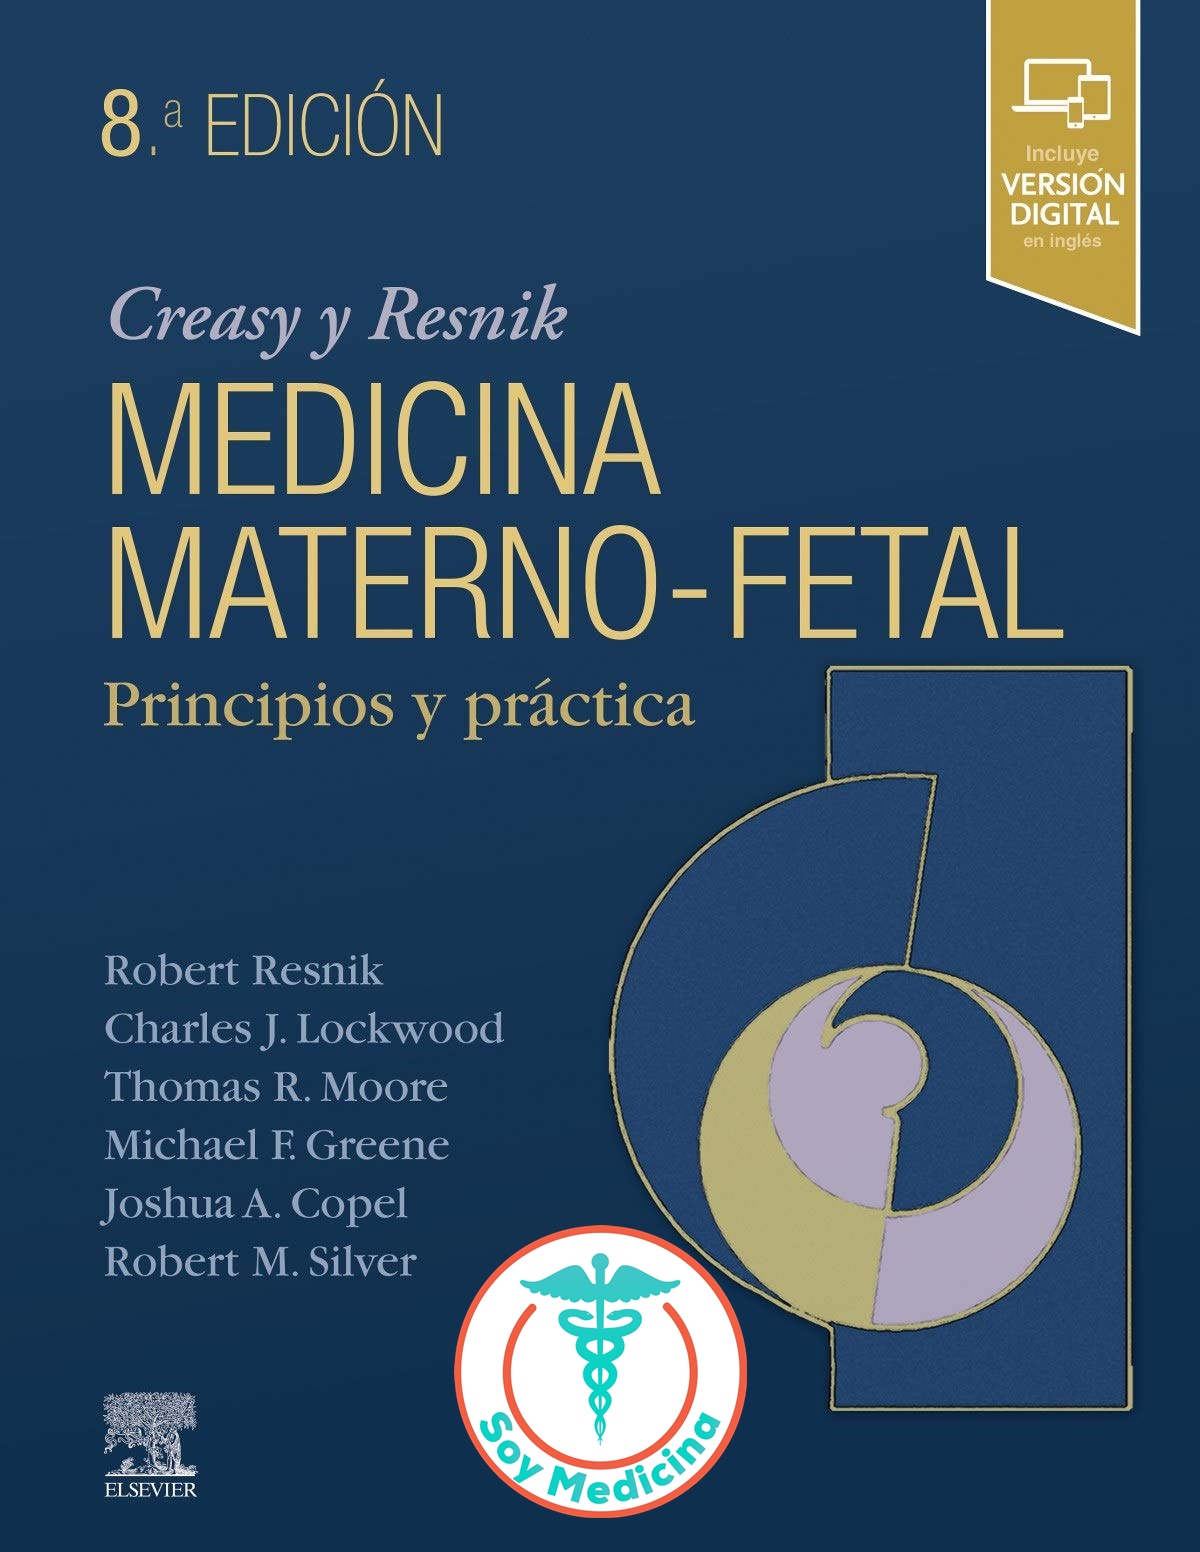 Creasy & Resnik Medicina Materno-fetal - 8 Edicion